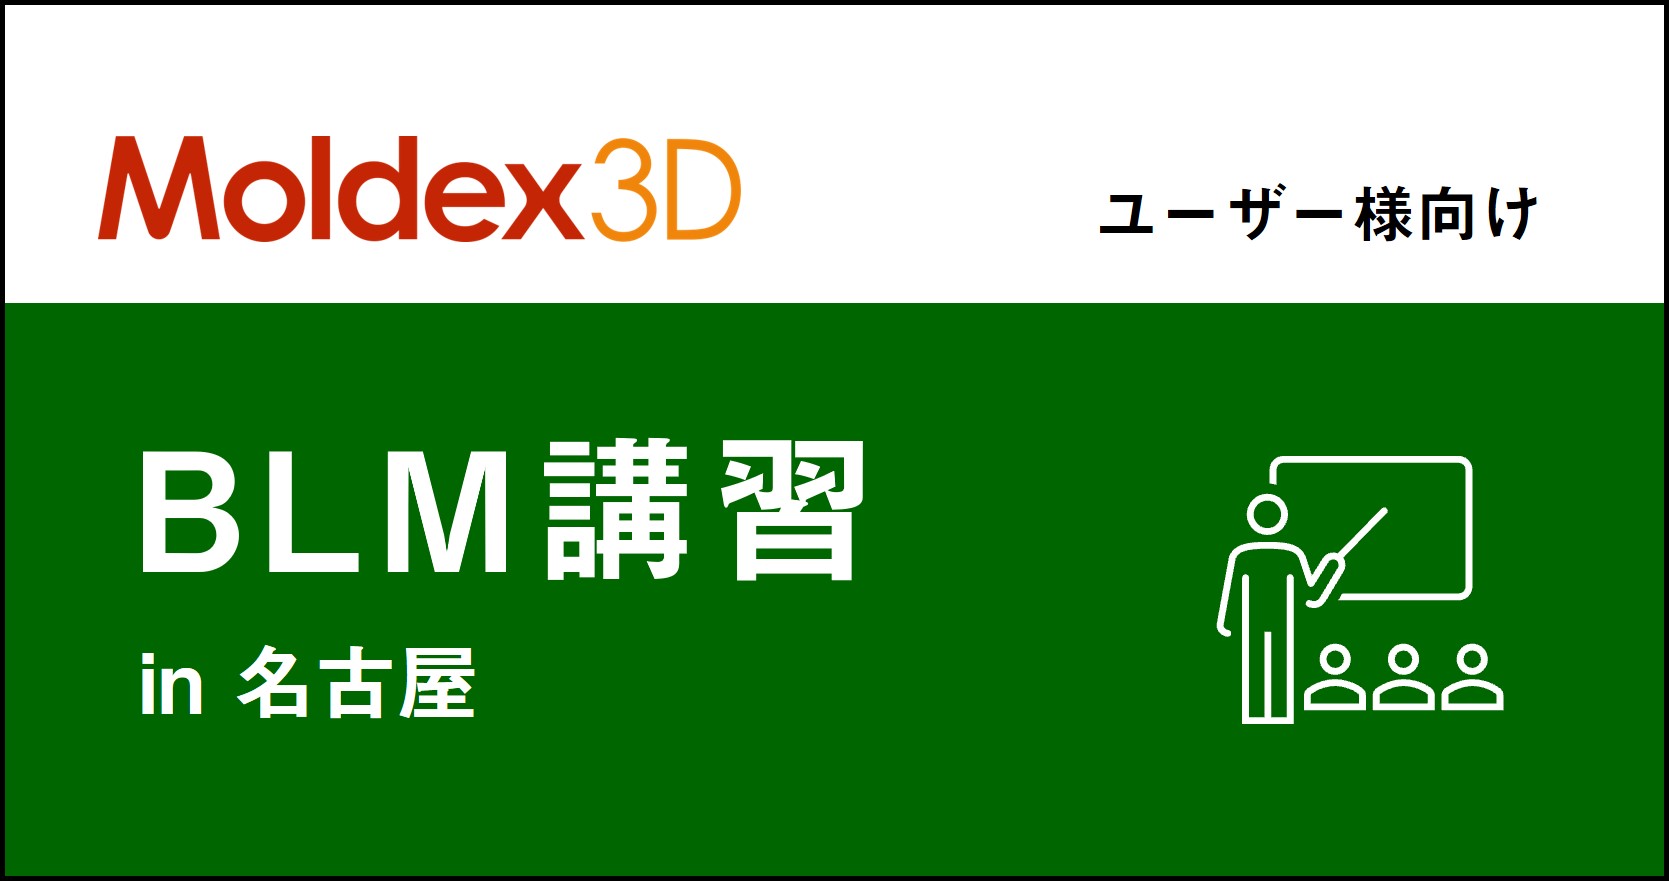 【名古屋】4~6月 Moldex3D/ BLM 講習 ※旧「Designer BLM講習」